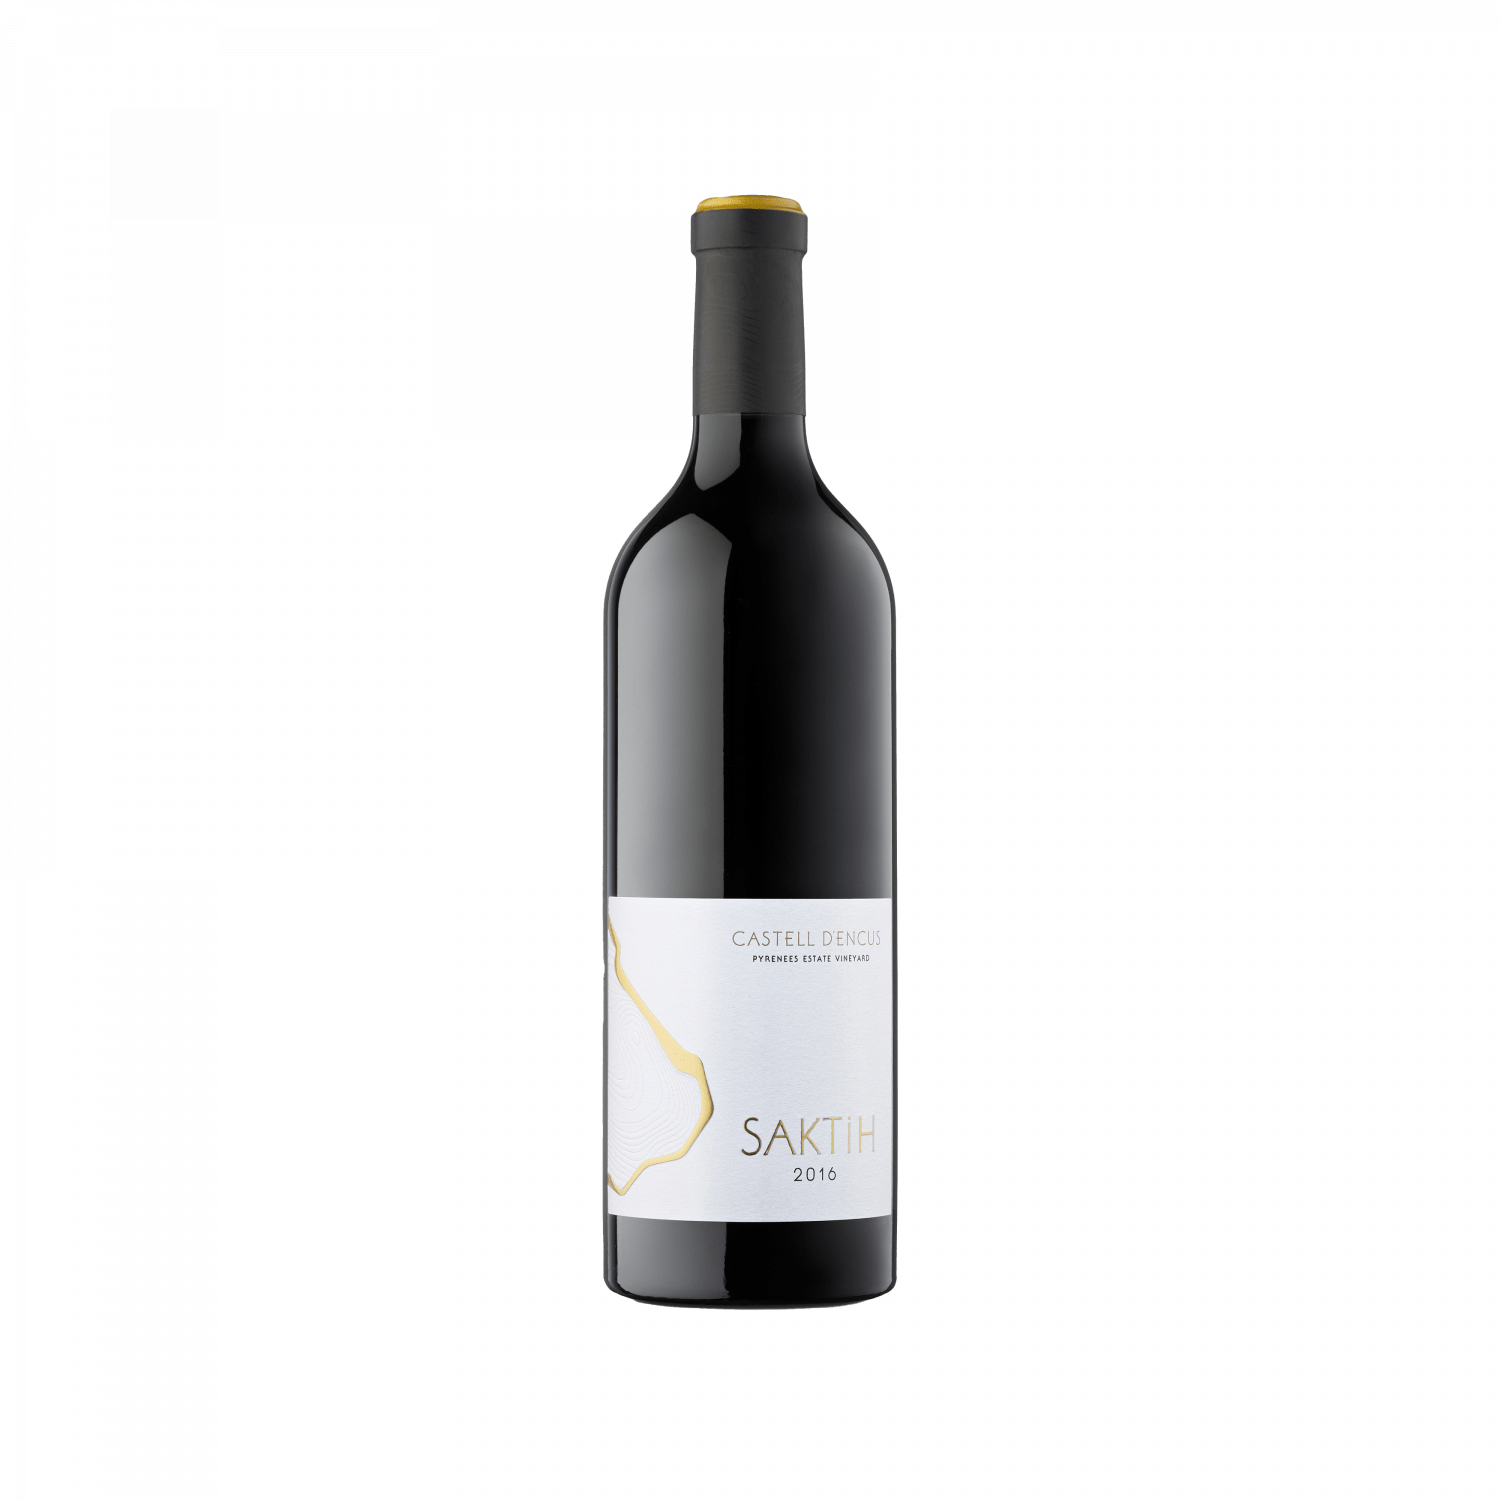 Ampolla d'estudi del vi SAKTIH 2016